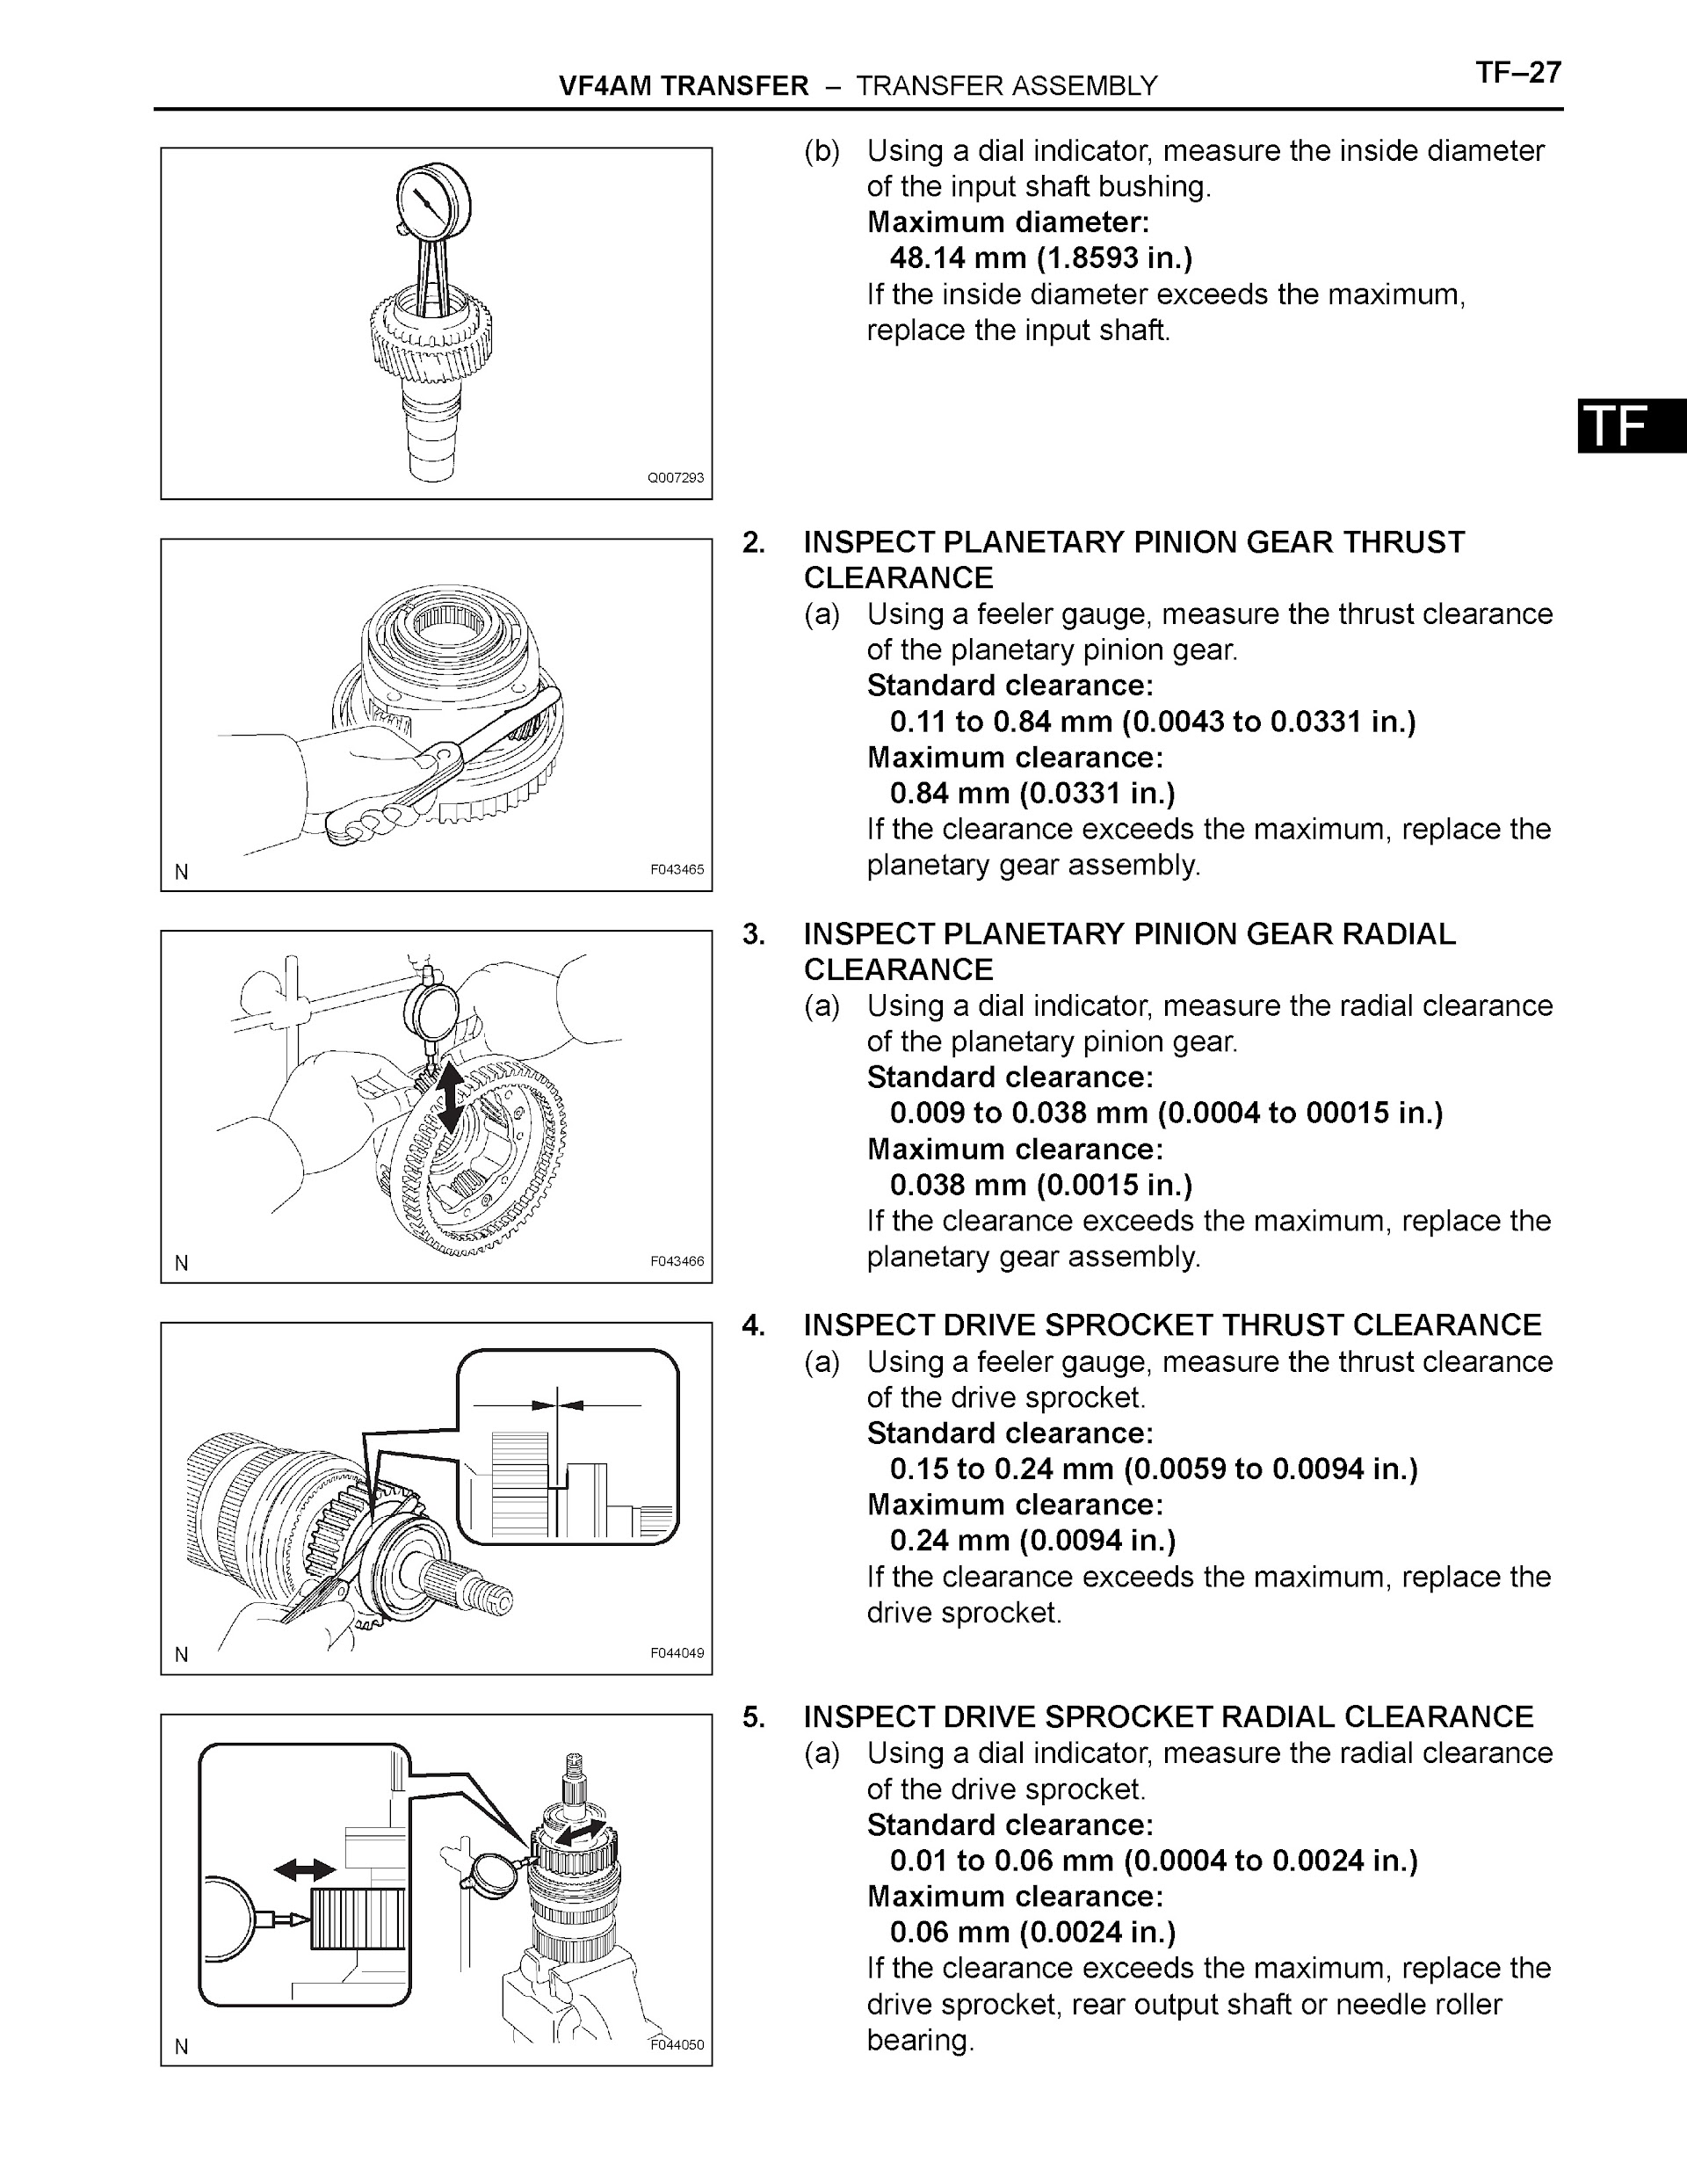 Toyota 4Runner Repair Manual, Transfer Assembly